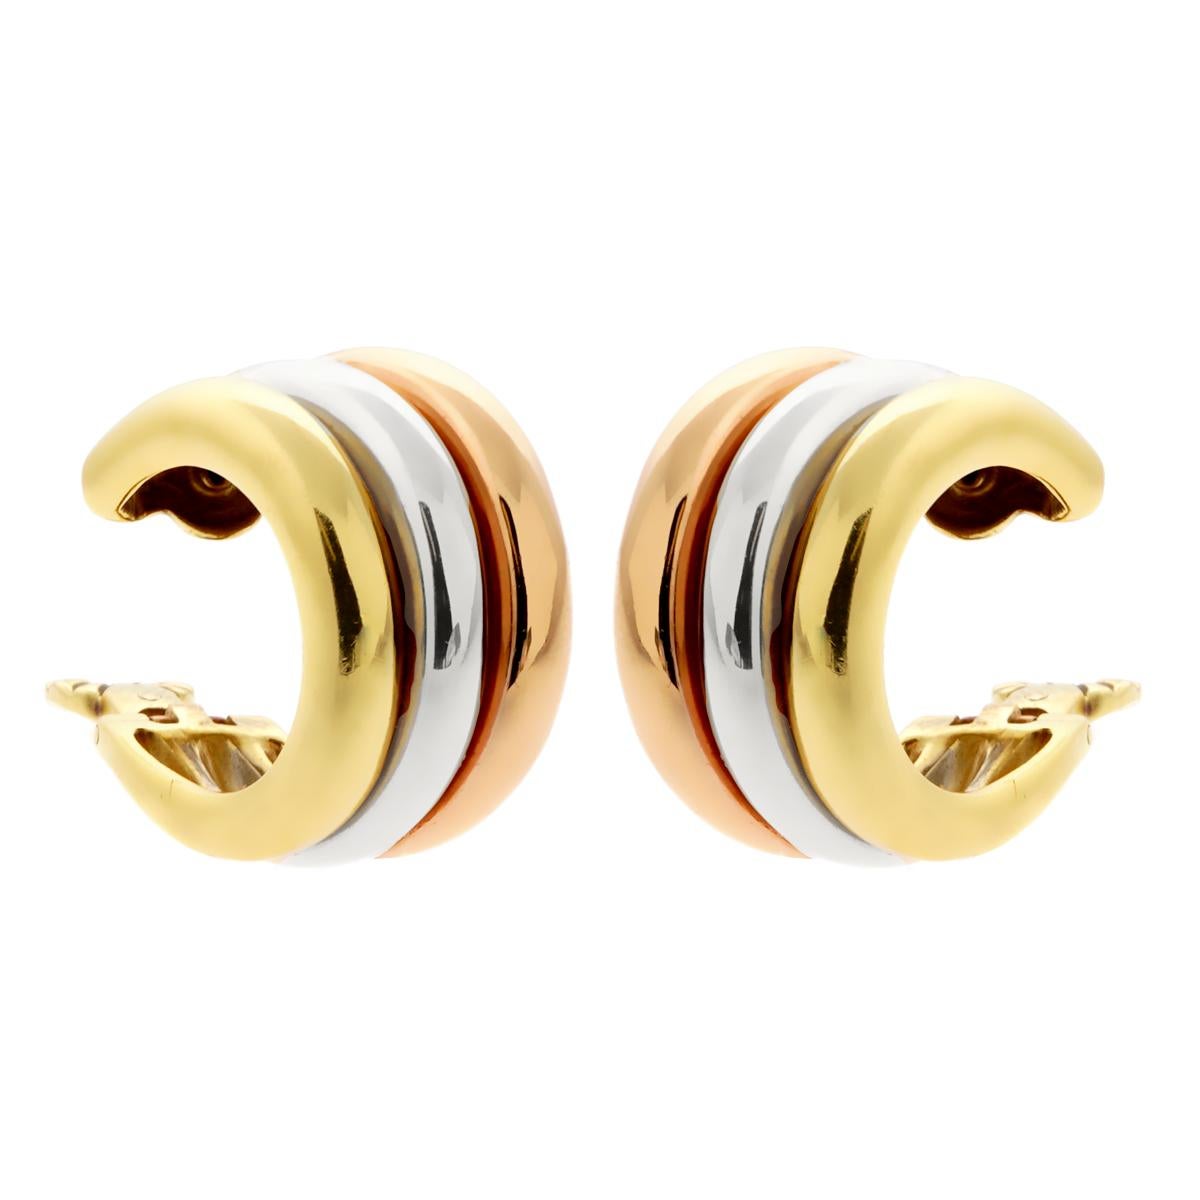 Une fabuleuse et élégante paire d'authentiques boucles d'oreilles Cartier en or blanc, jaune et rose Cartier 18 carats, au design moderne et intemporel. Ils s'incurvent doucement autour de la base de l'oreille et s'intègrent parfaitement à tout